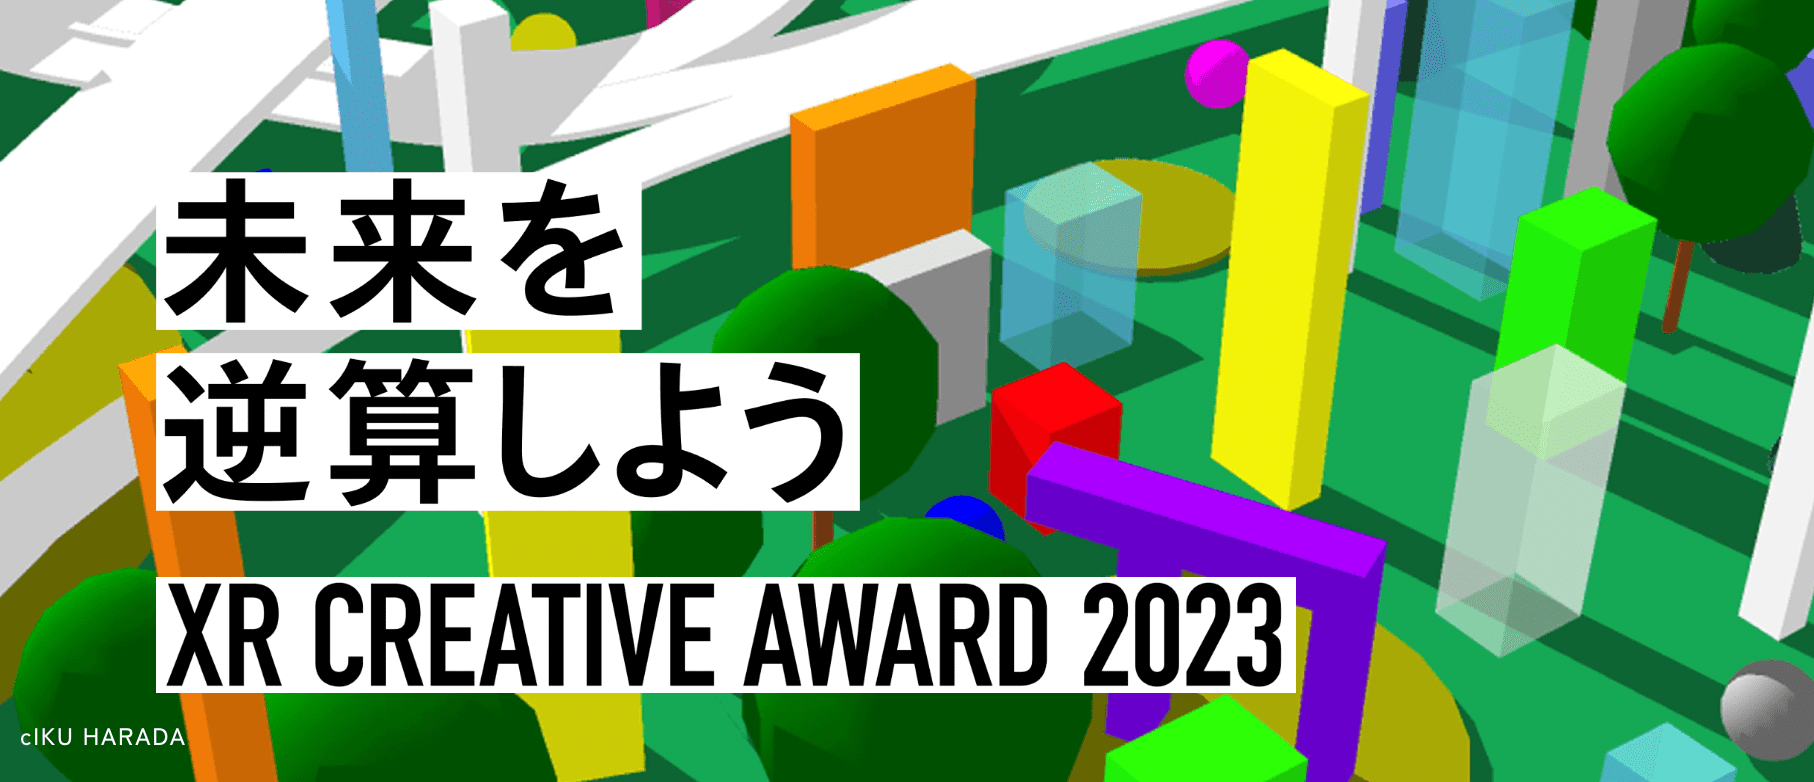 未来を逆算しよう「XR CREATIVE AWARD 2023」